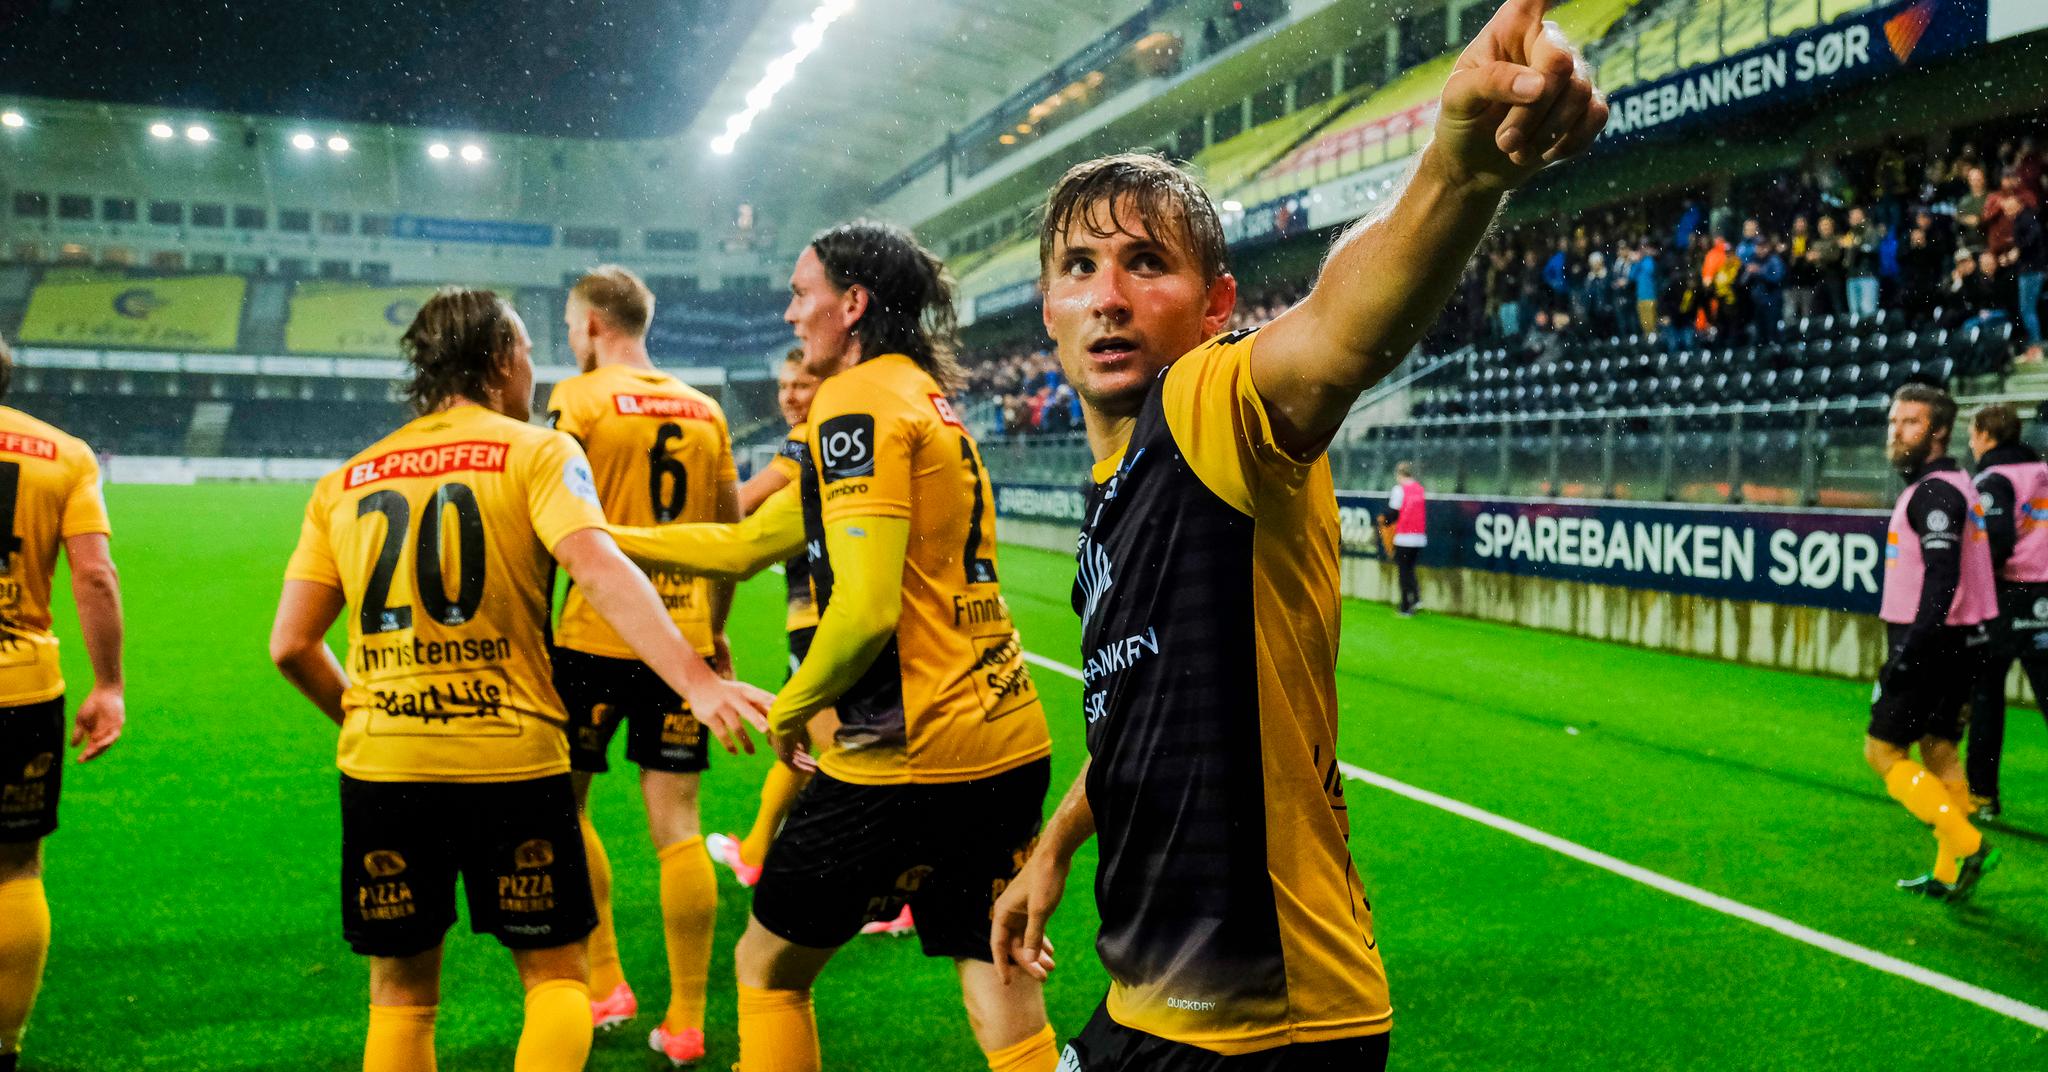 Steffen Lie Skålevik scoret ti mål på 11 kamper i Start i fjor, og bidro sterkt til å sikre opprykket til Eliteserien.